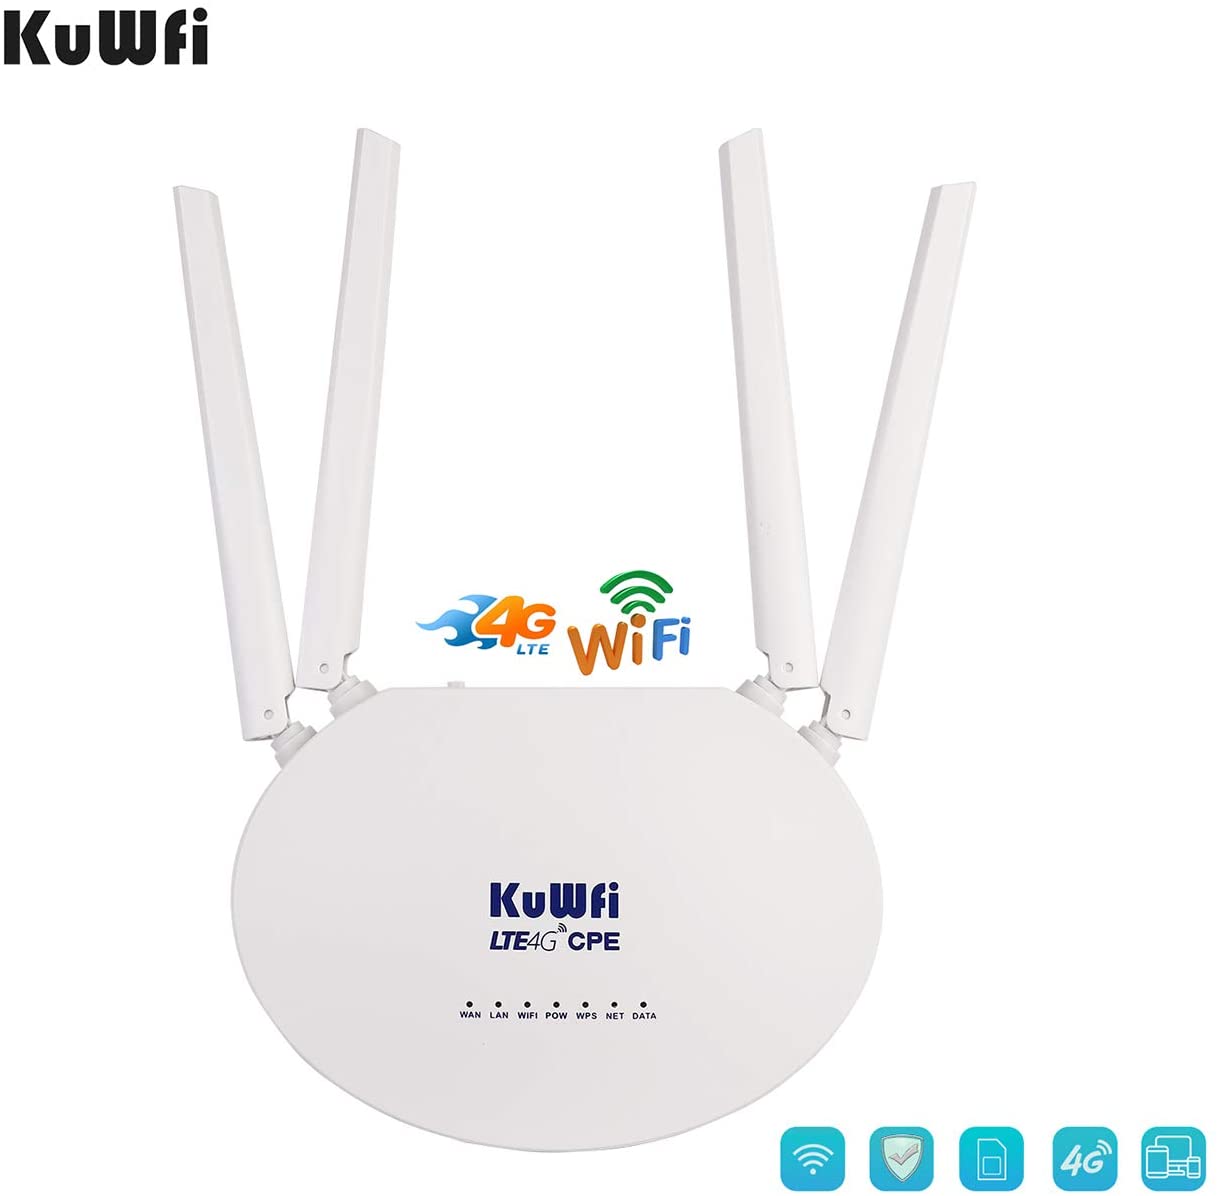 KuWFi 4G LTE SIM Router Wireless WiFi Internet 300Mbps Unlocked